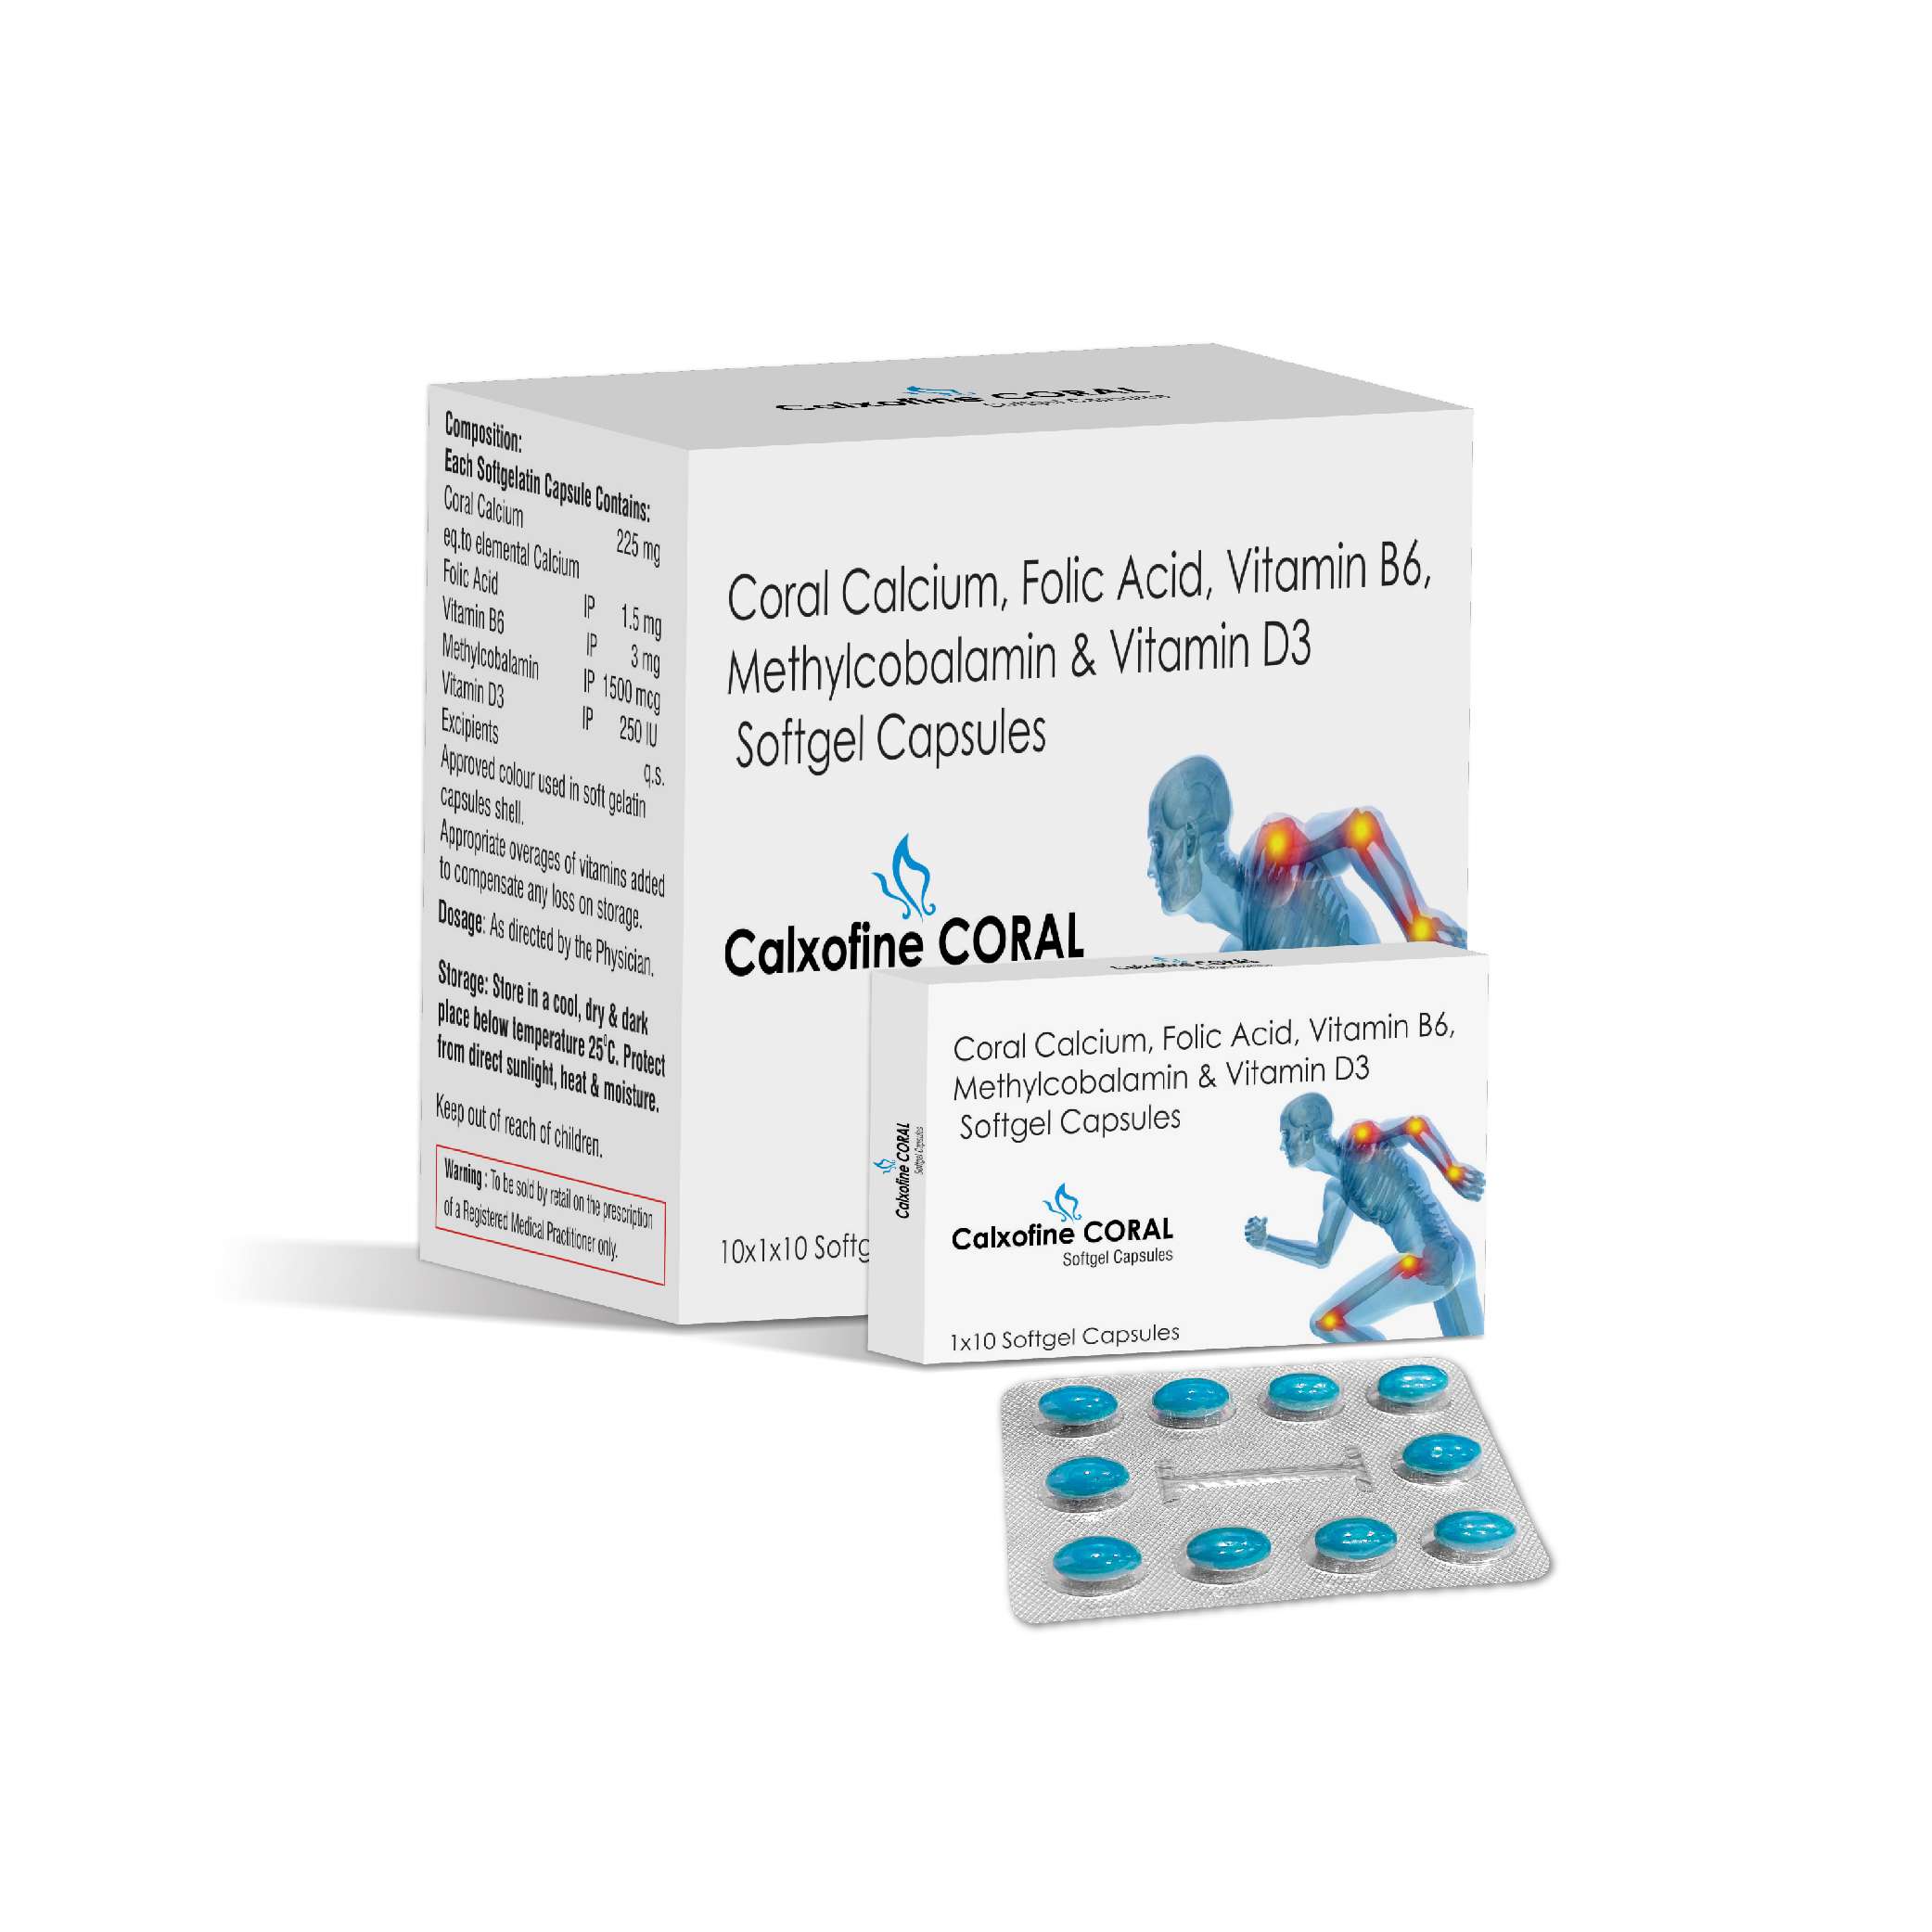 coral calcium - elemental calcium 225 mg + folic acid 1.5 mg + vitamin b6 3 mg + methlycobalamin 1500 mcg + vitamin d3 250 iu